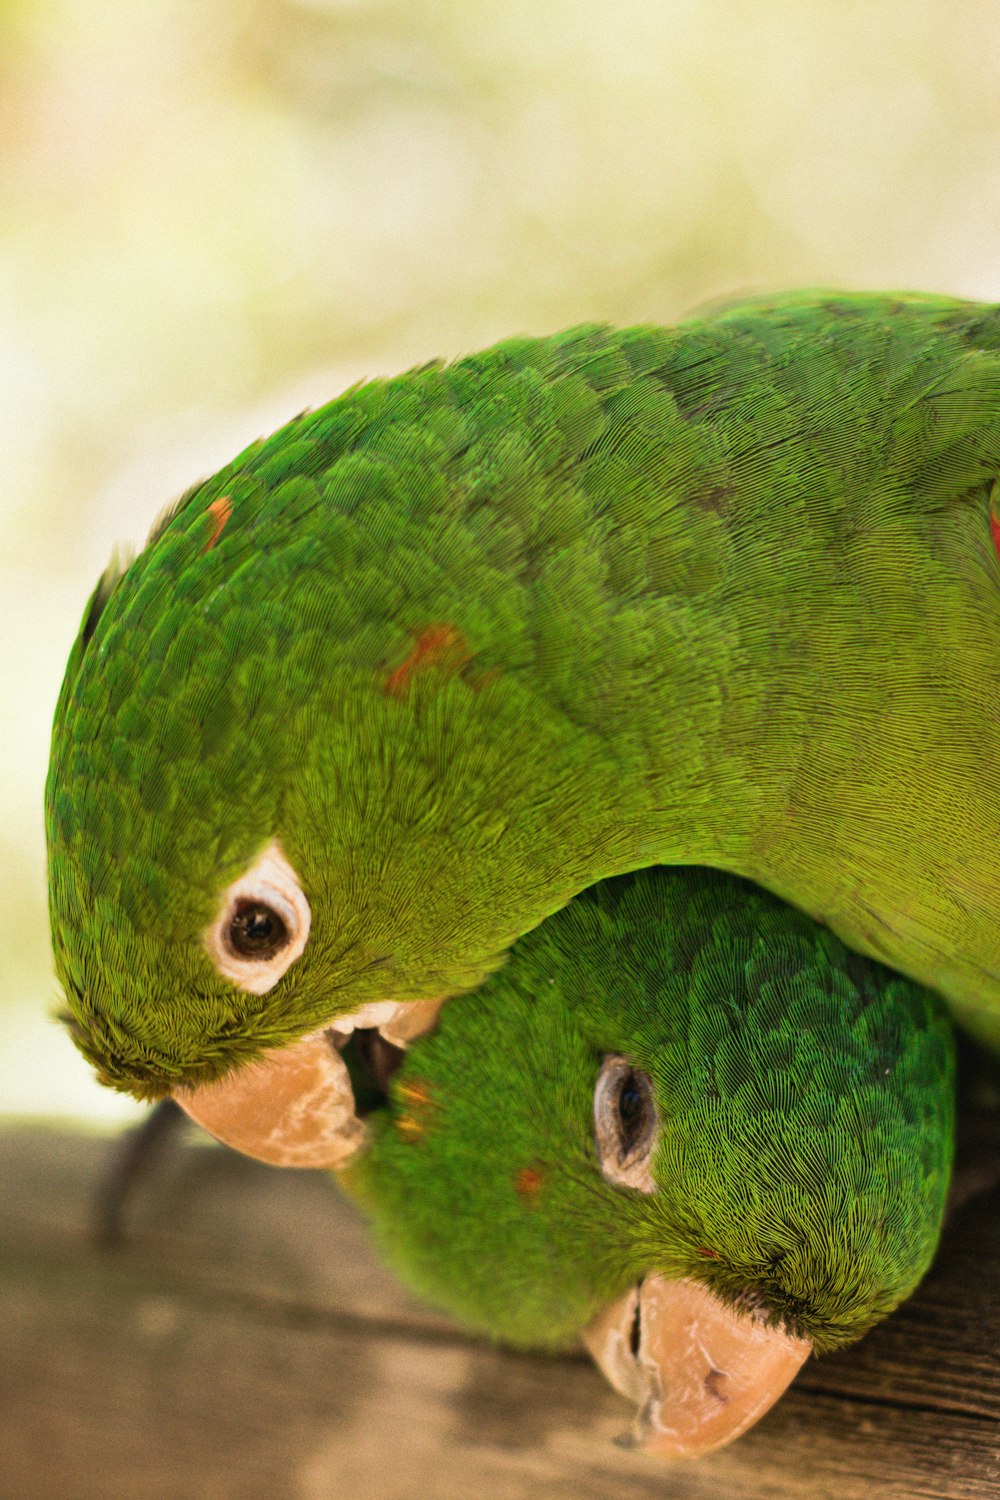 a green bird with a yellow beak